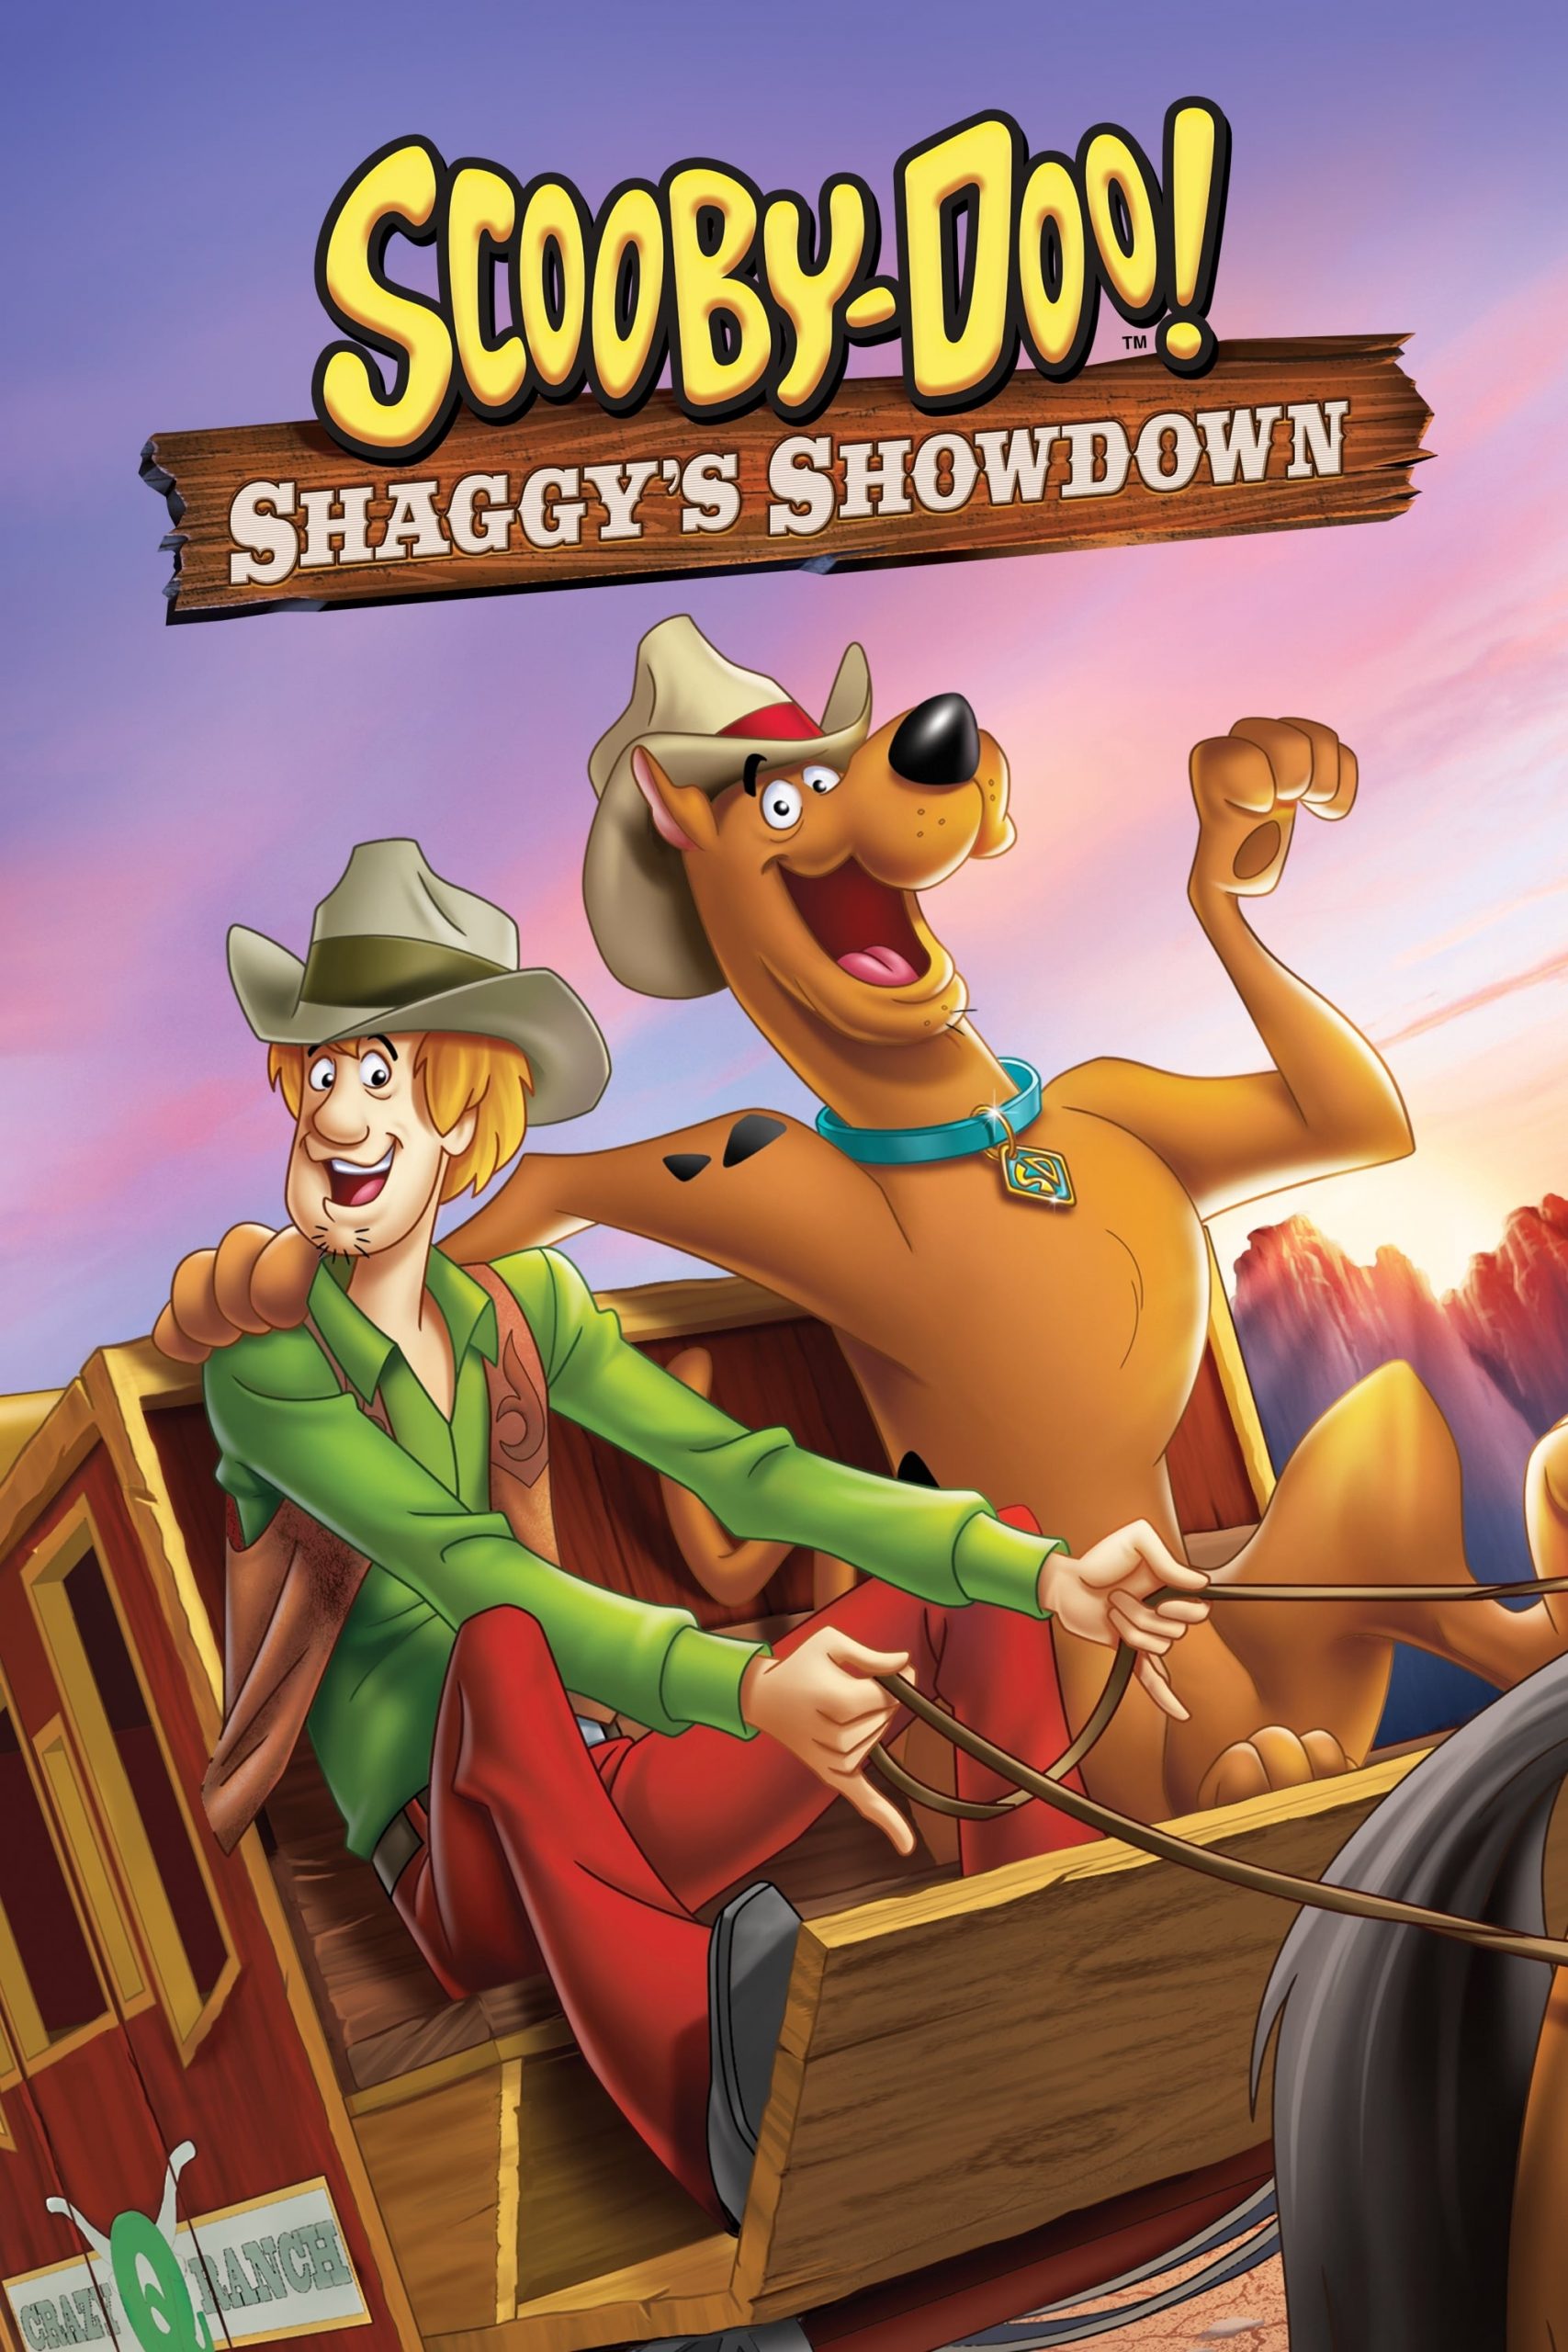 دانلود انیمیشن Scooby Doo Shaggy's Showdown 2017 با دوبله فارسی